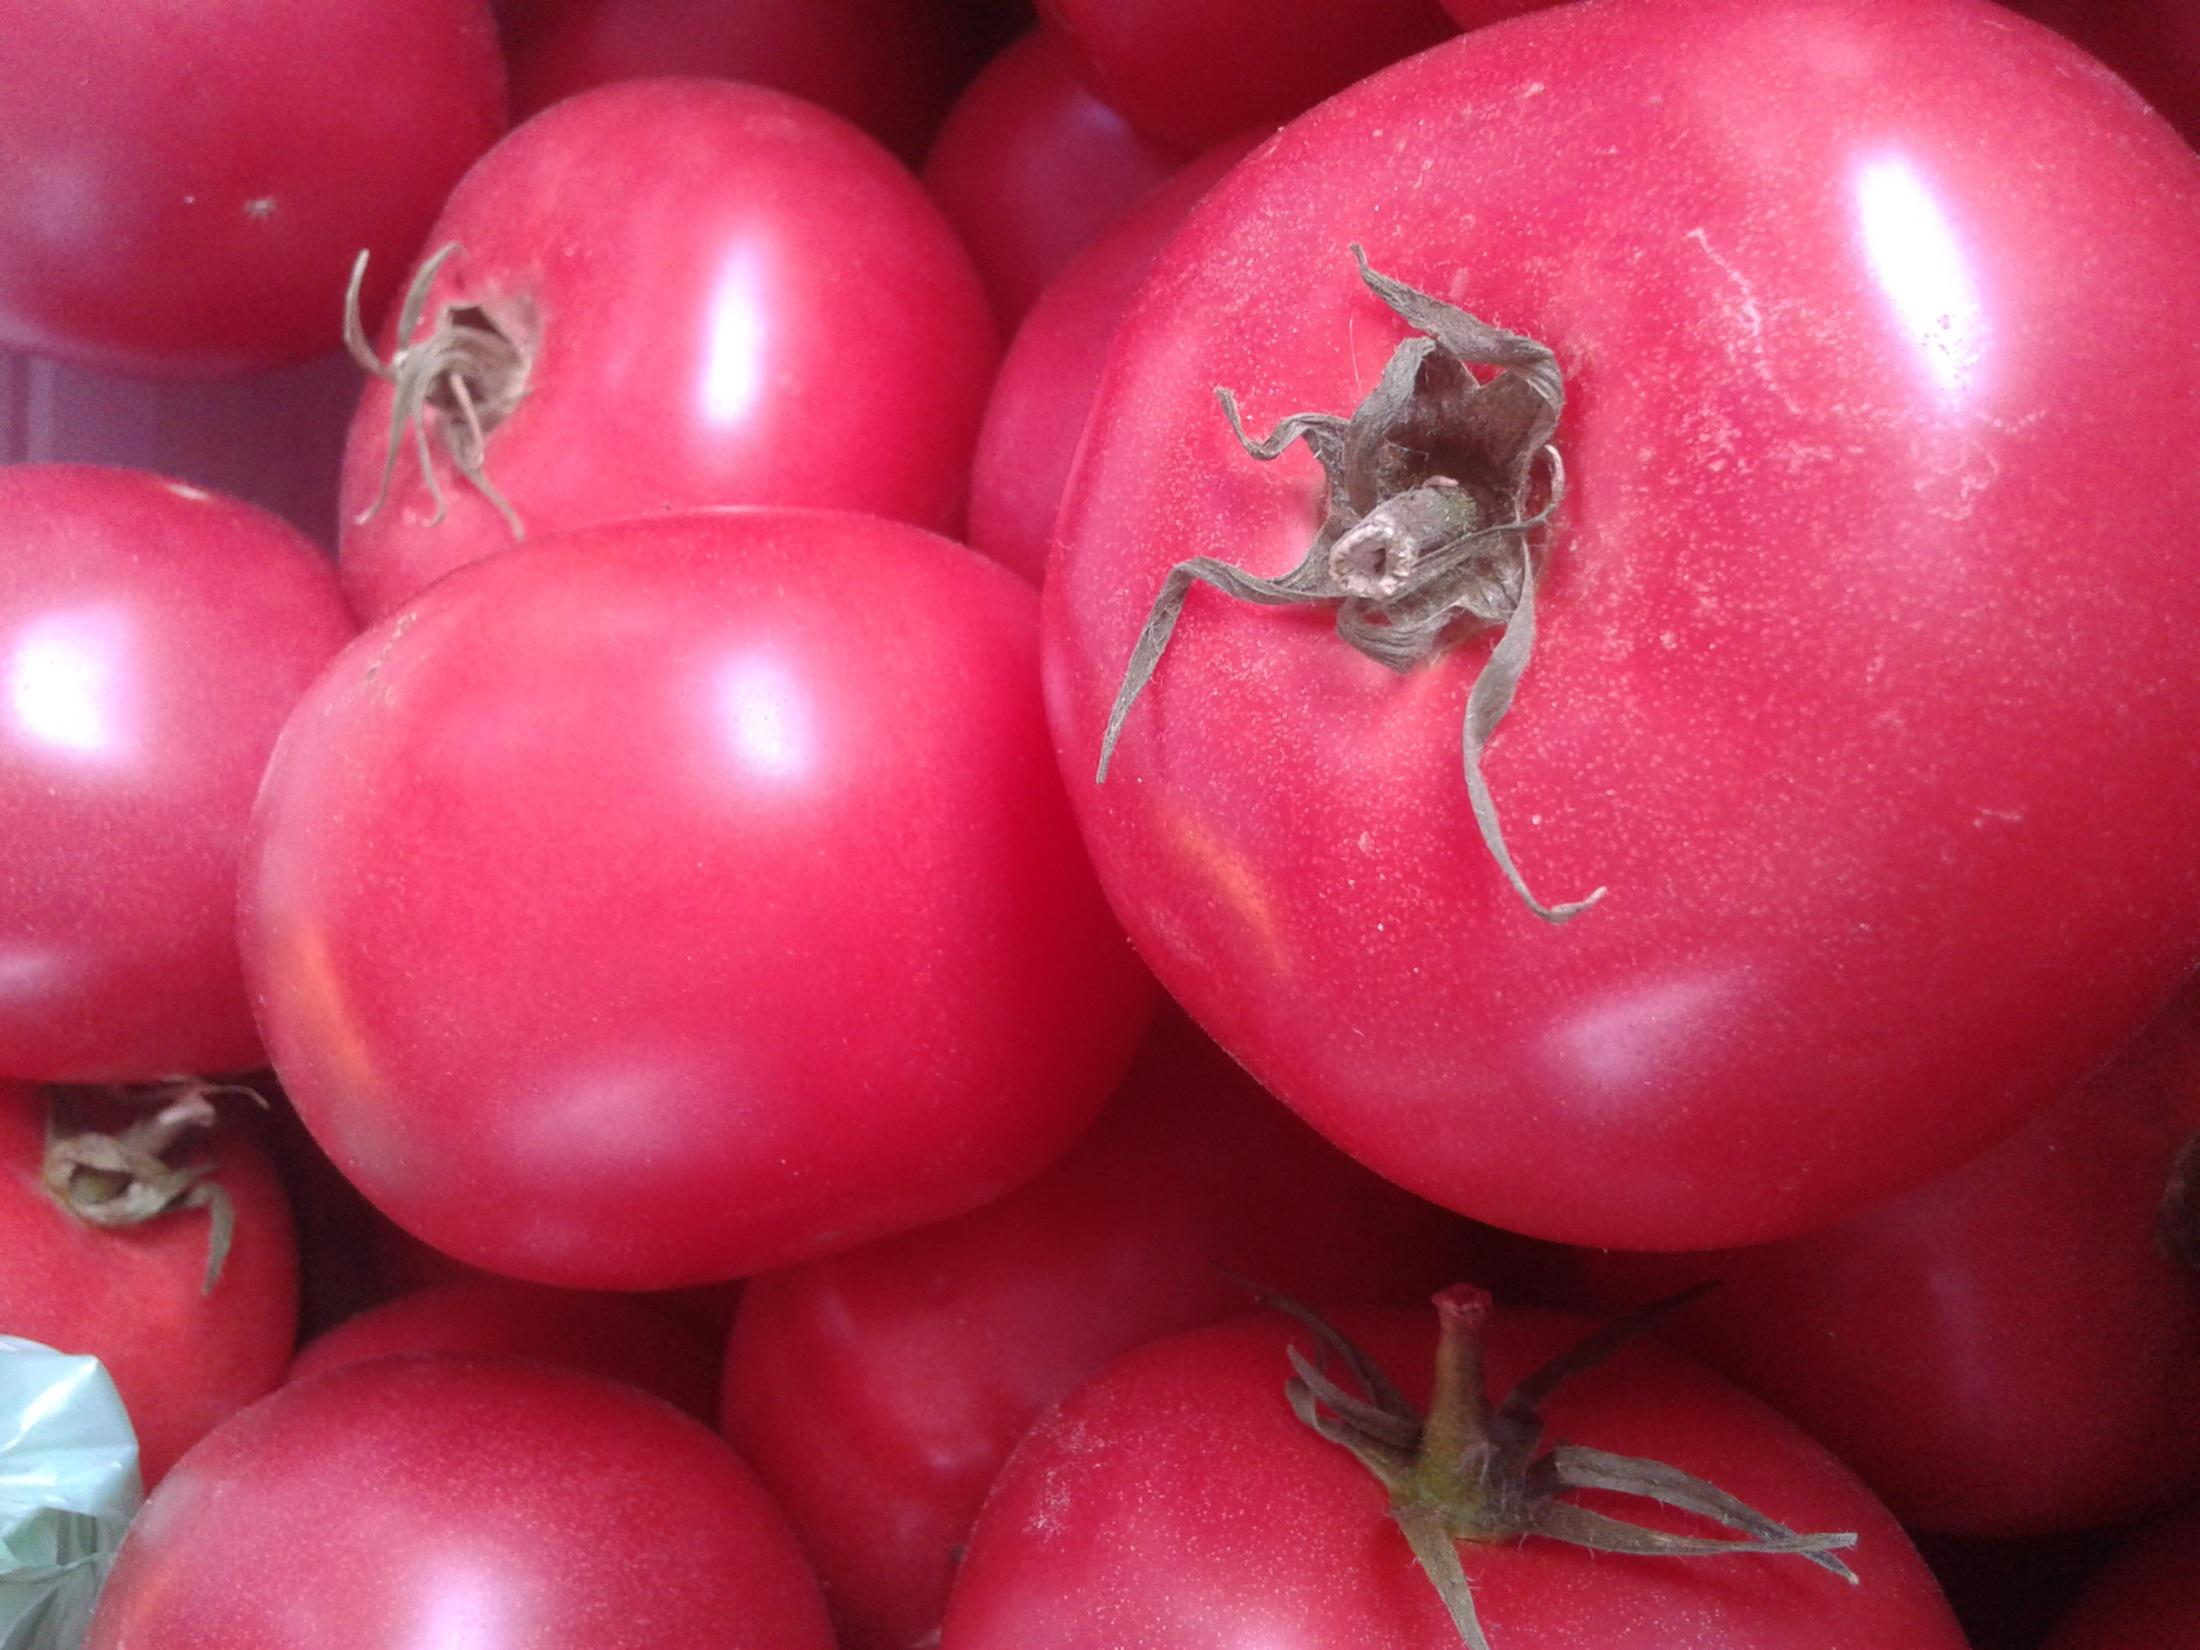 Zupa pomidorowa Składniki: Przecier pomidorowy Zalać pomidory gorącą wodą, obrać i pokroić, usunąć nasiona oraz szypułki. Miąższ włożyć do garnka i gotować przez 20 min.